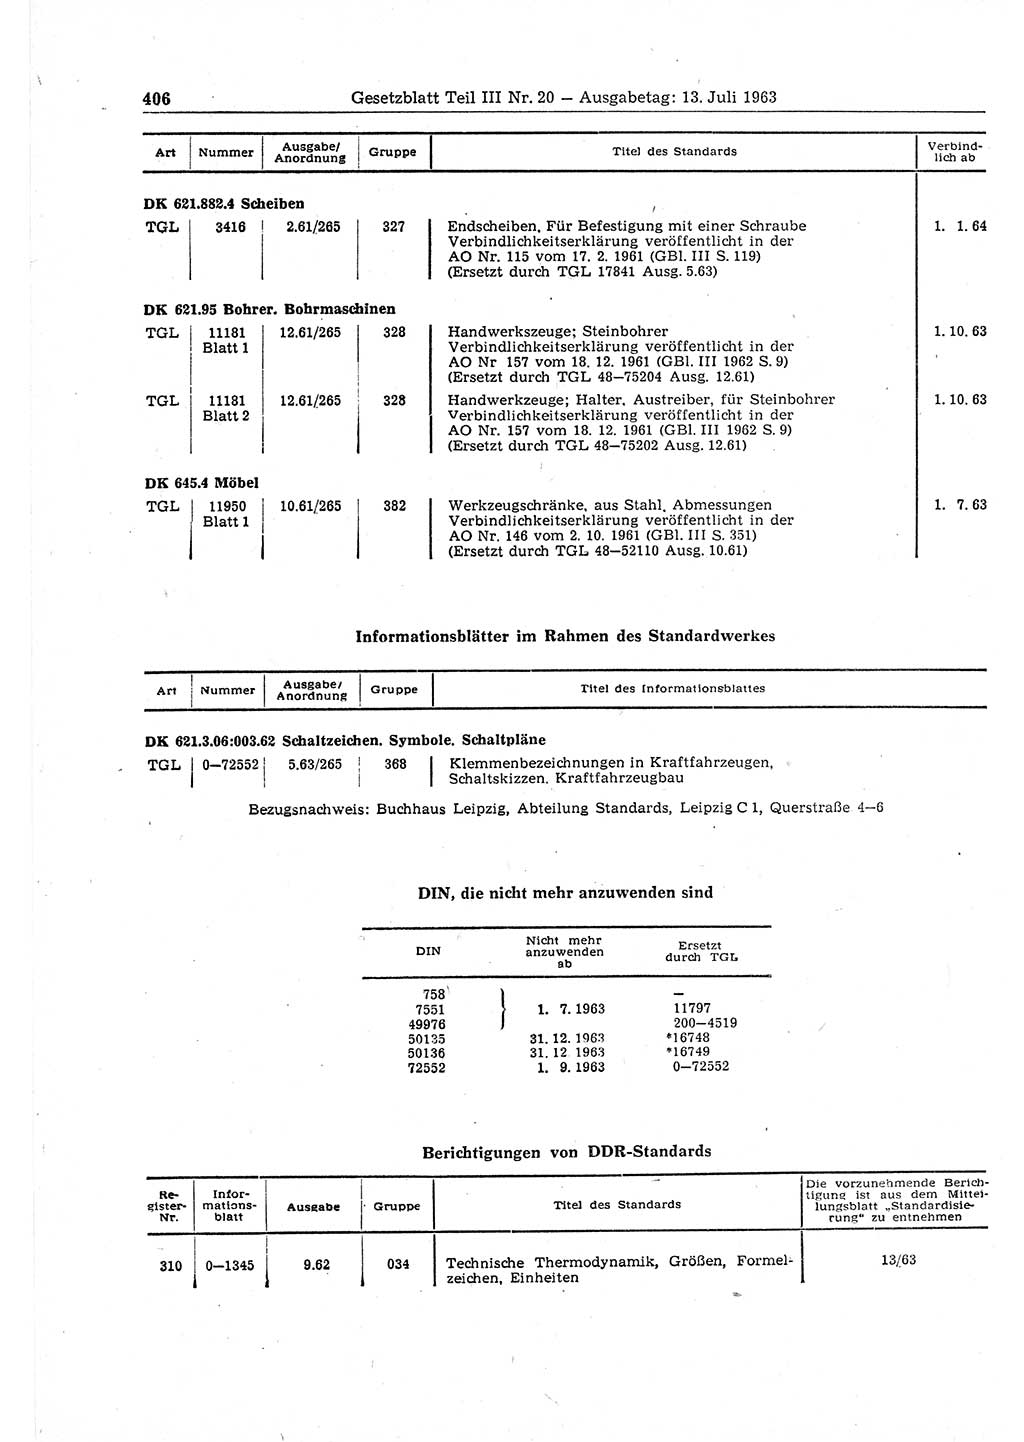 Gesetzblatt (GBl.) der Deutschen Demokratischen Republik (DDR) Teil ⅠⅠⅠ 1963, Seite 406 (GBl. DDR ⅠⅠⅠ 1963, S. 406)